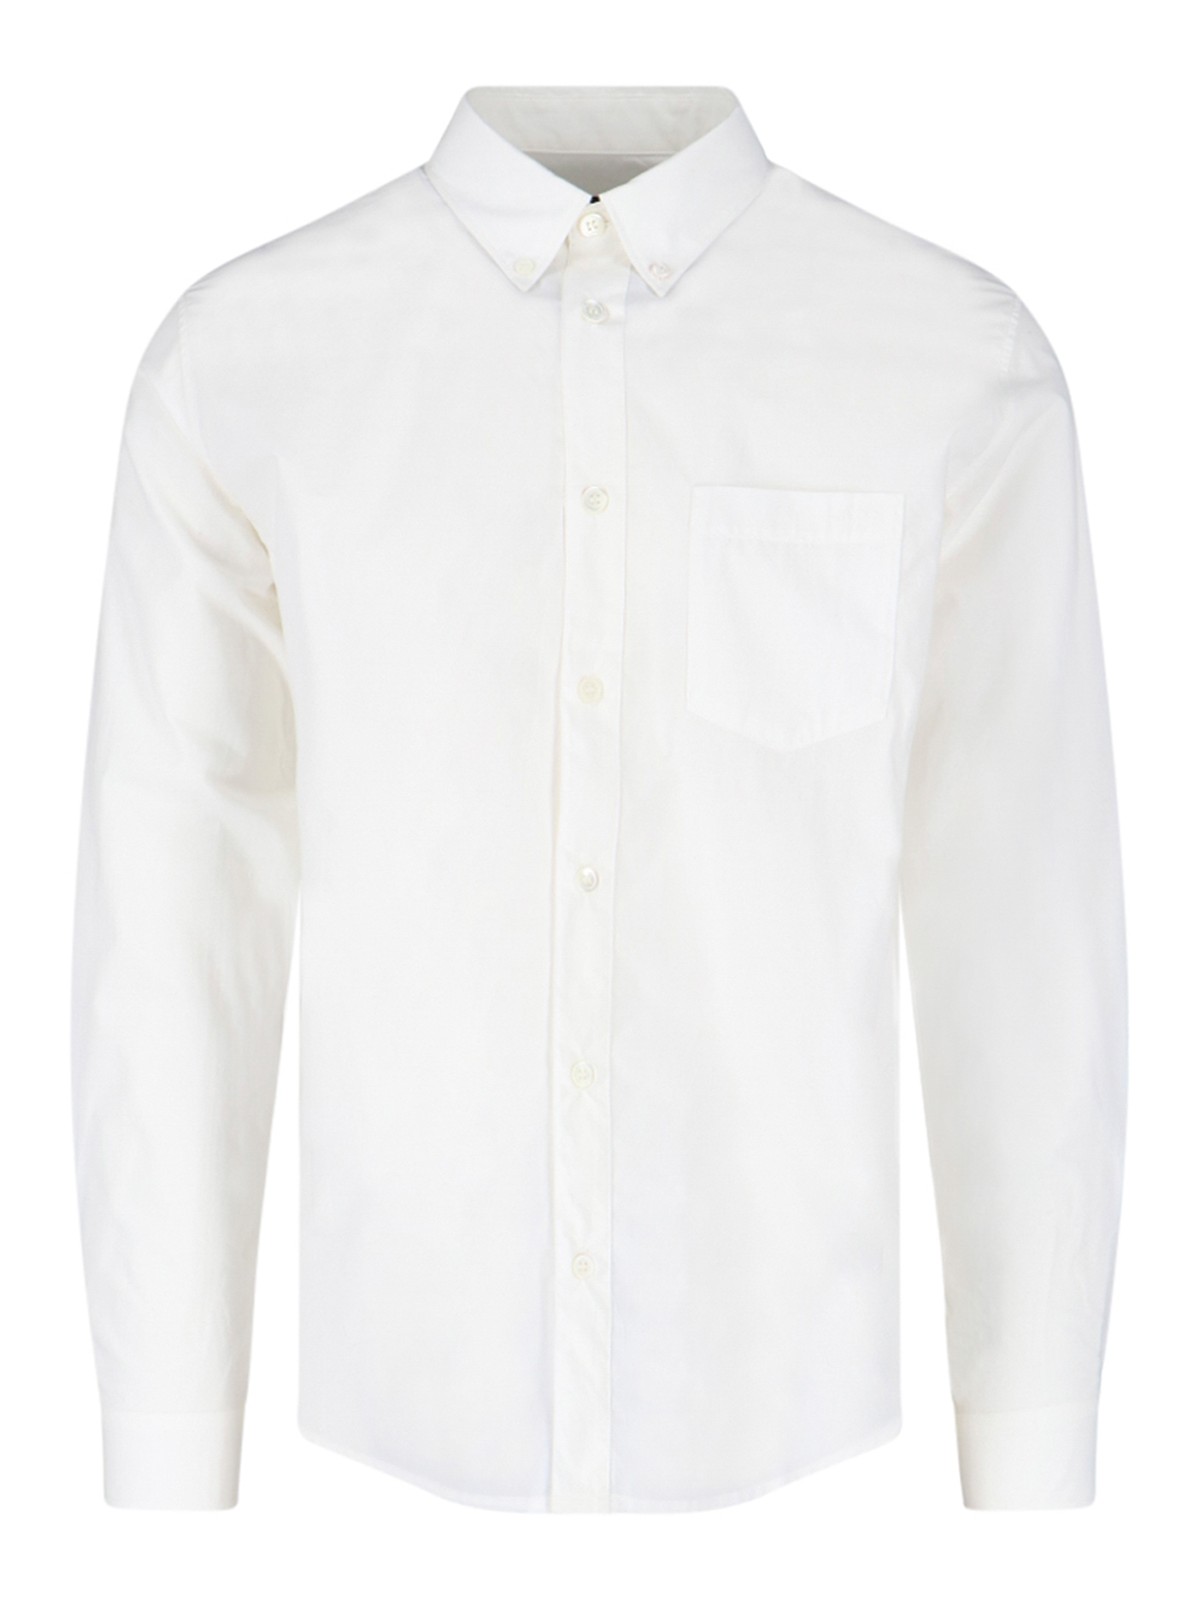 Shop Apc A.p.c. Shirts White